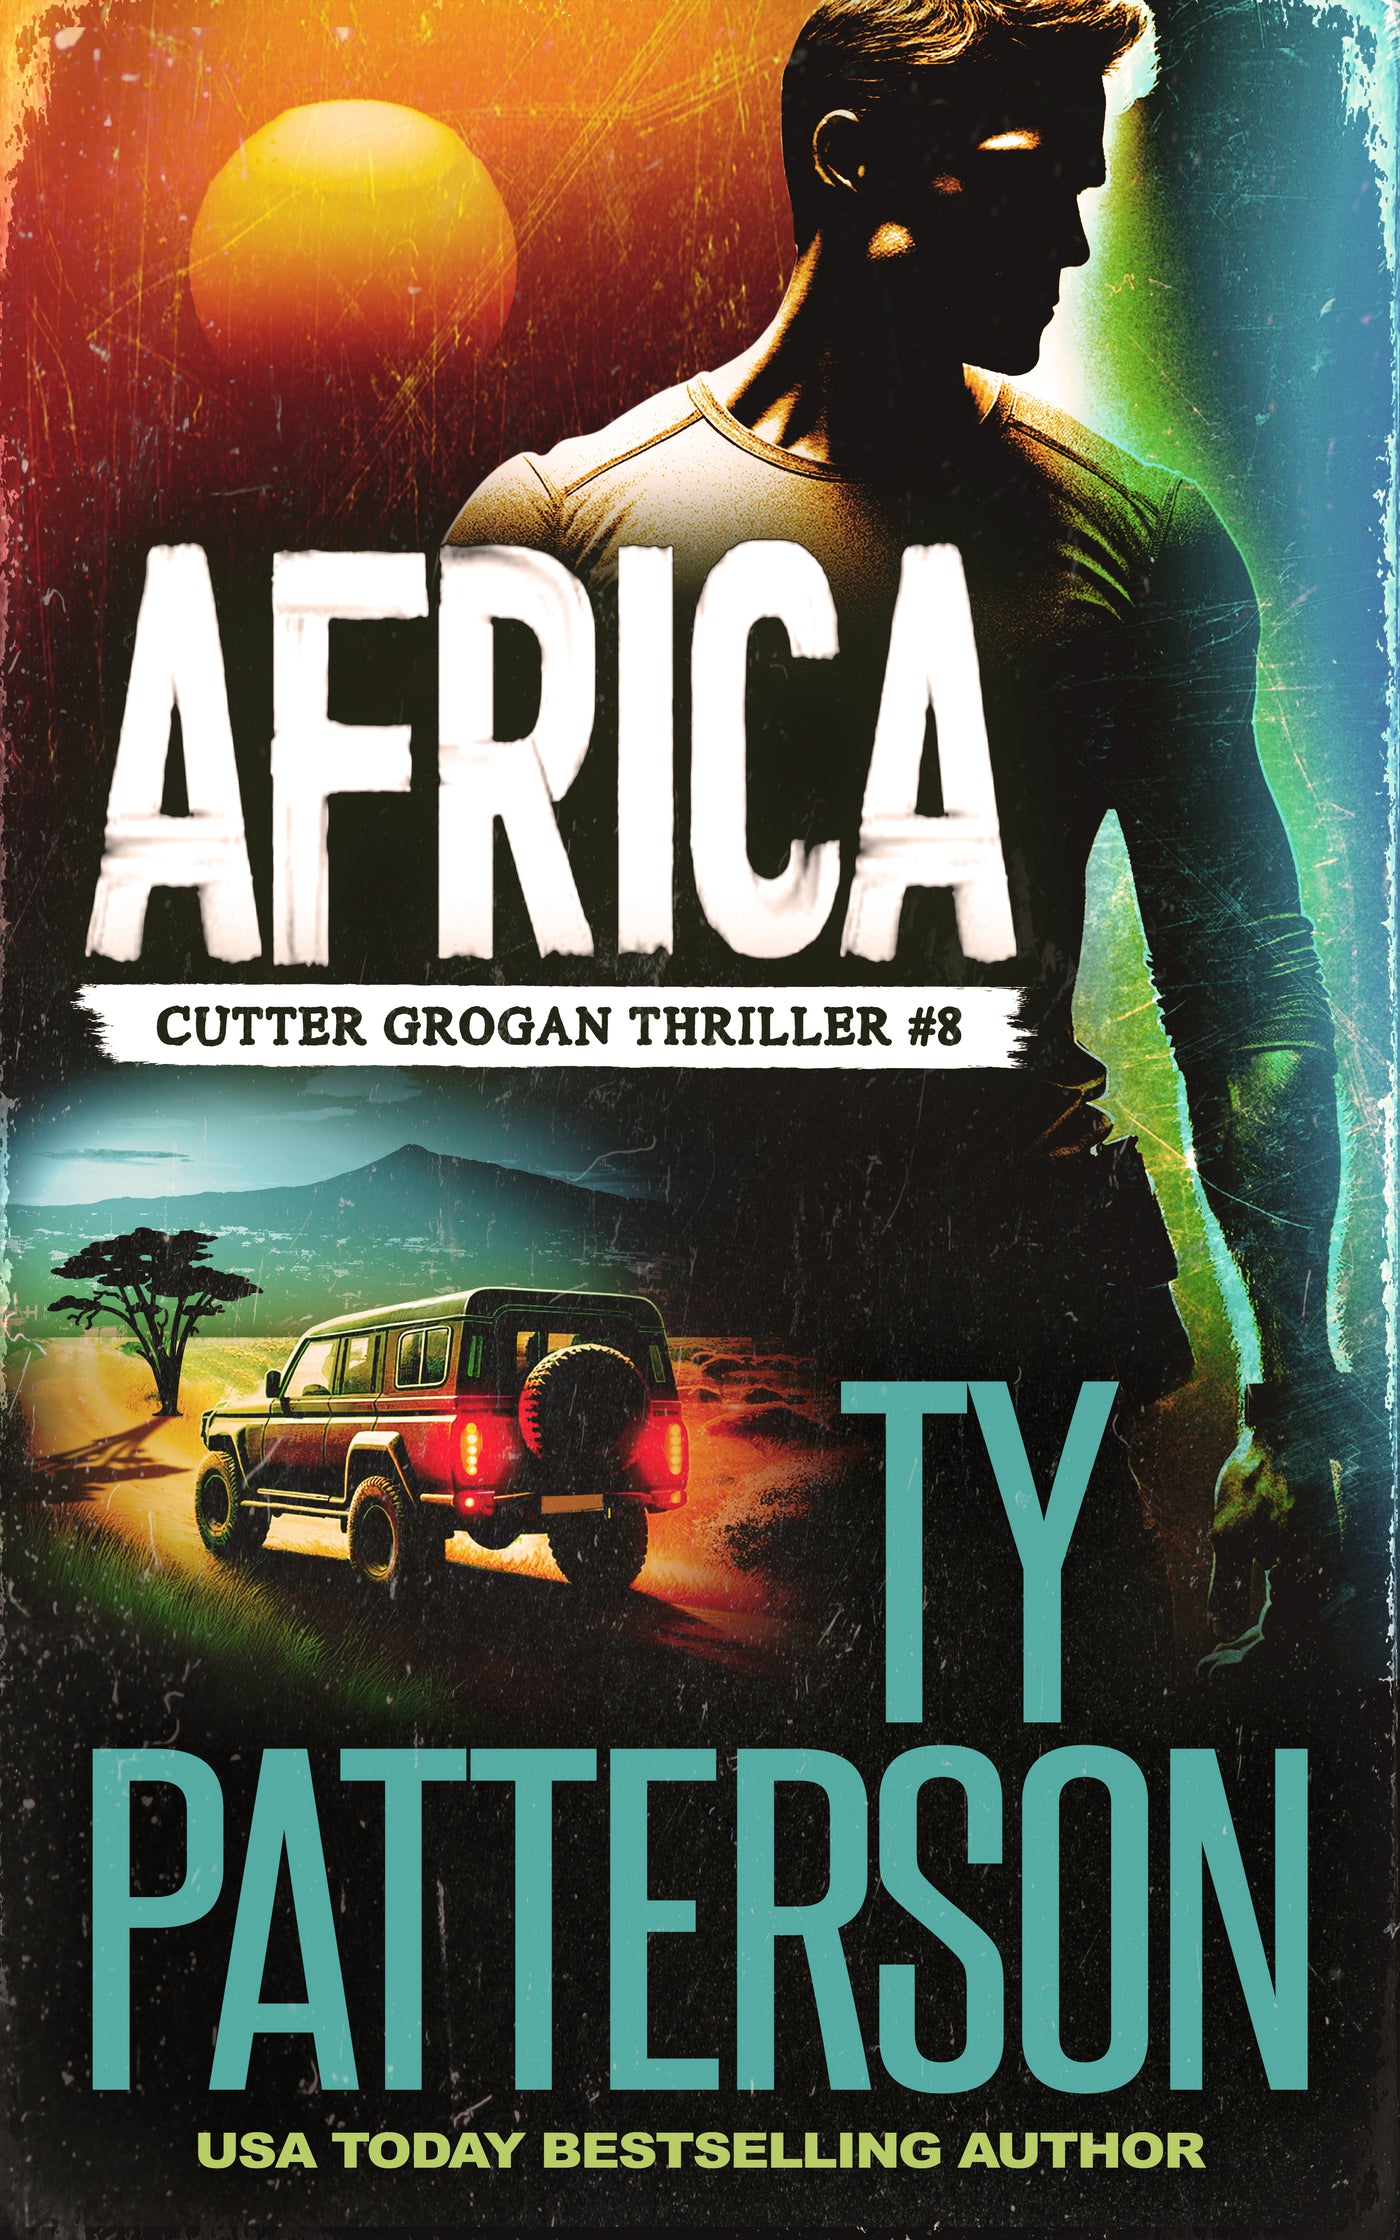 Africa - A Cutter Grogan eBook Thriller